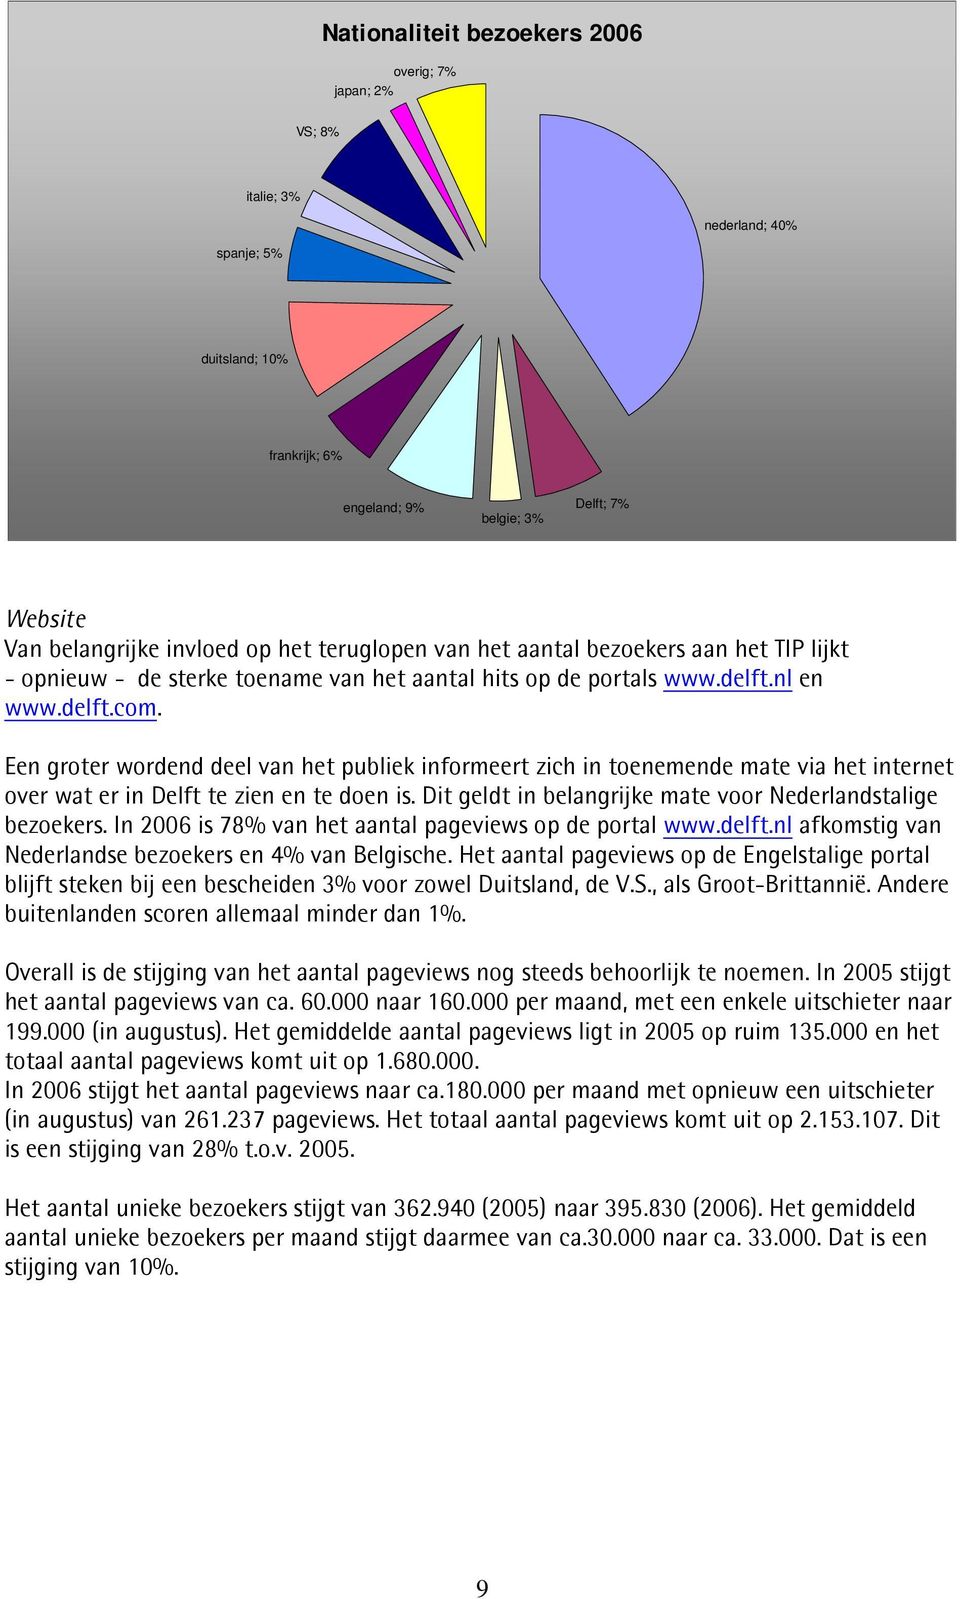 Een groter wordend deel van het publiek informeert zich in toenemende mate via het internet over wat er in Delft te zien en te doen is. Dit geldt in belangrijke mate voor Nederlandstalige bezoekers.